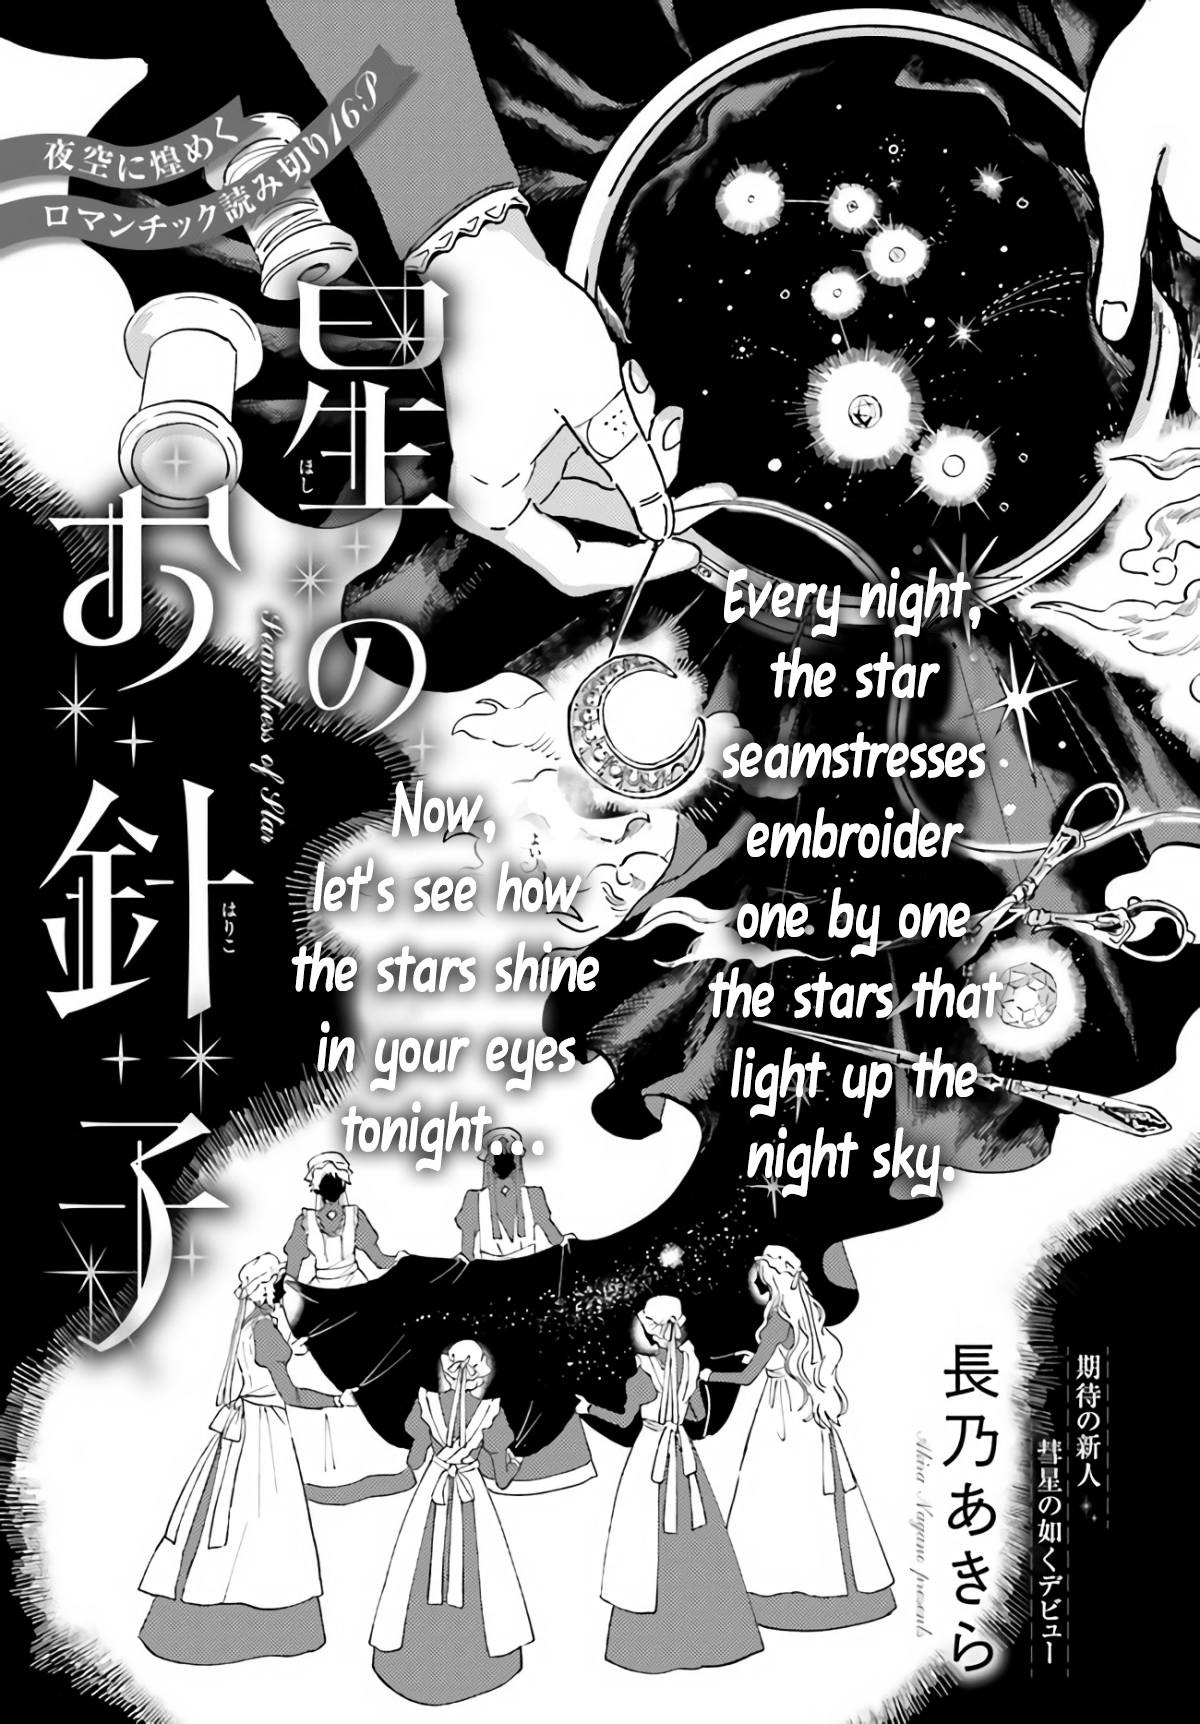 Star Seamstress manga